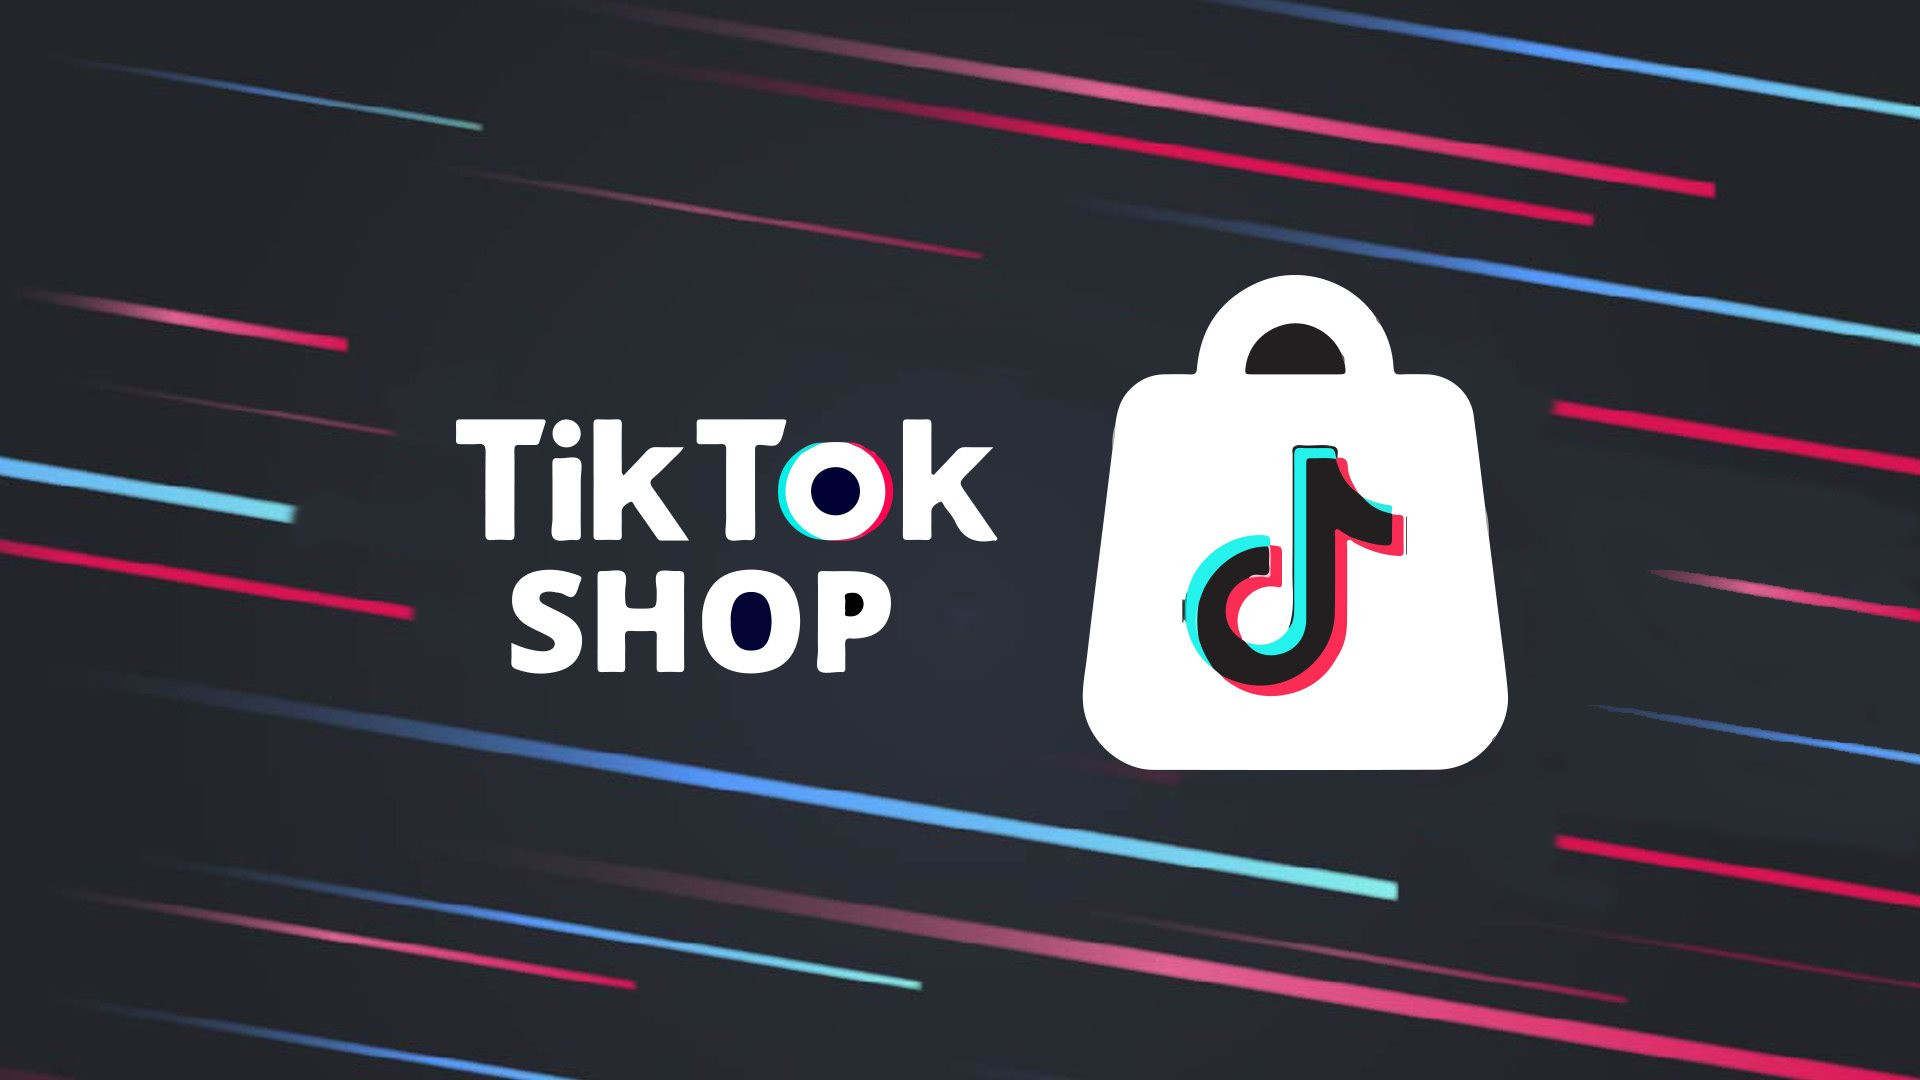 TikTok Shop đại náo ngành TMĐT, hút người dùng từ Shopee, Amazon - Ảnh 1.